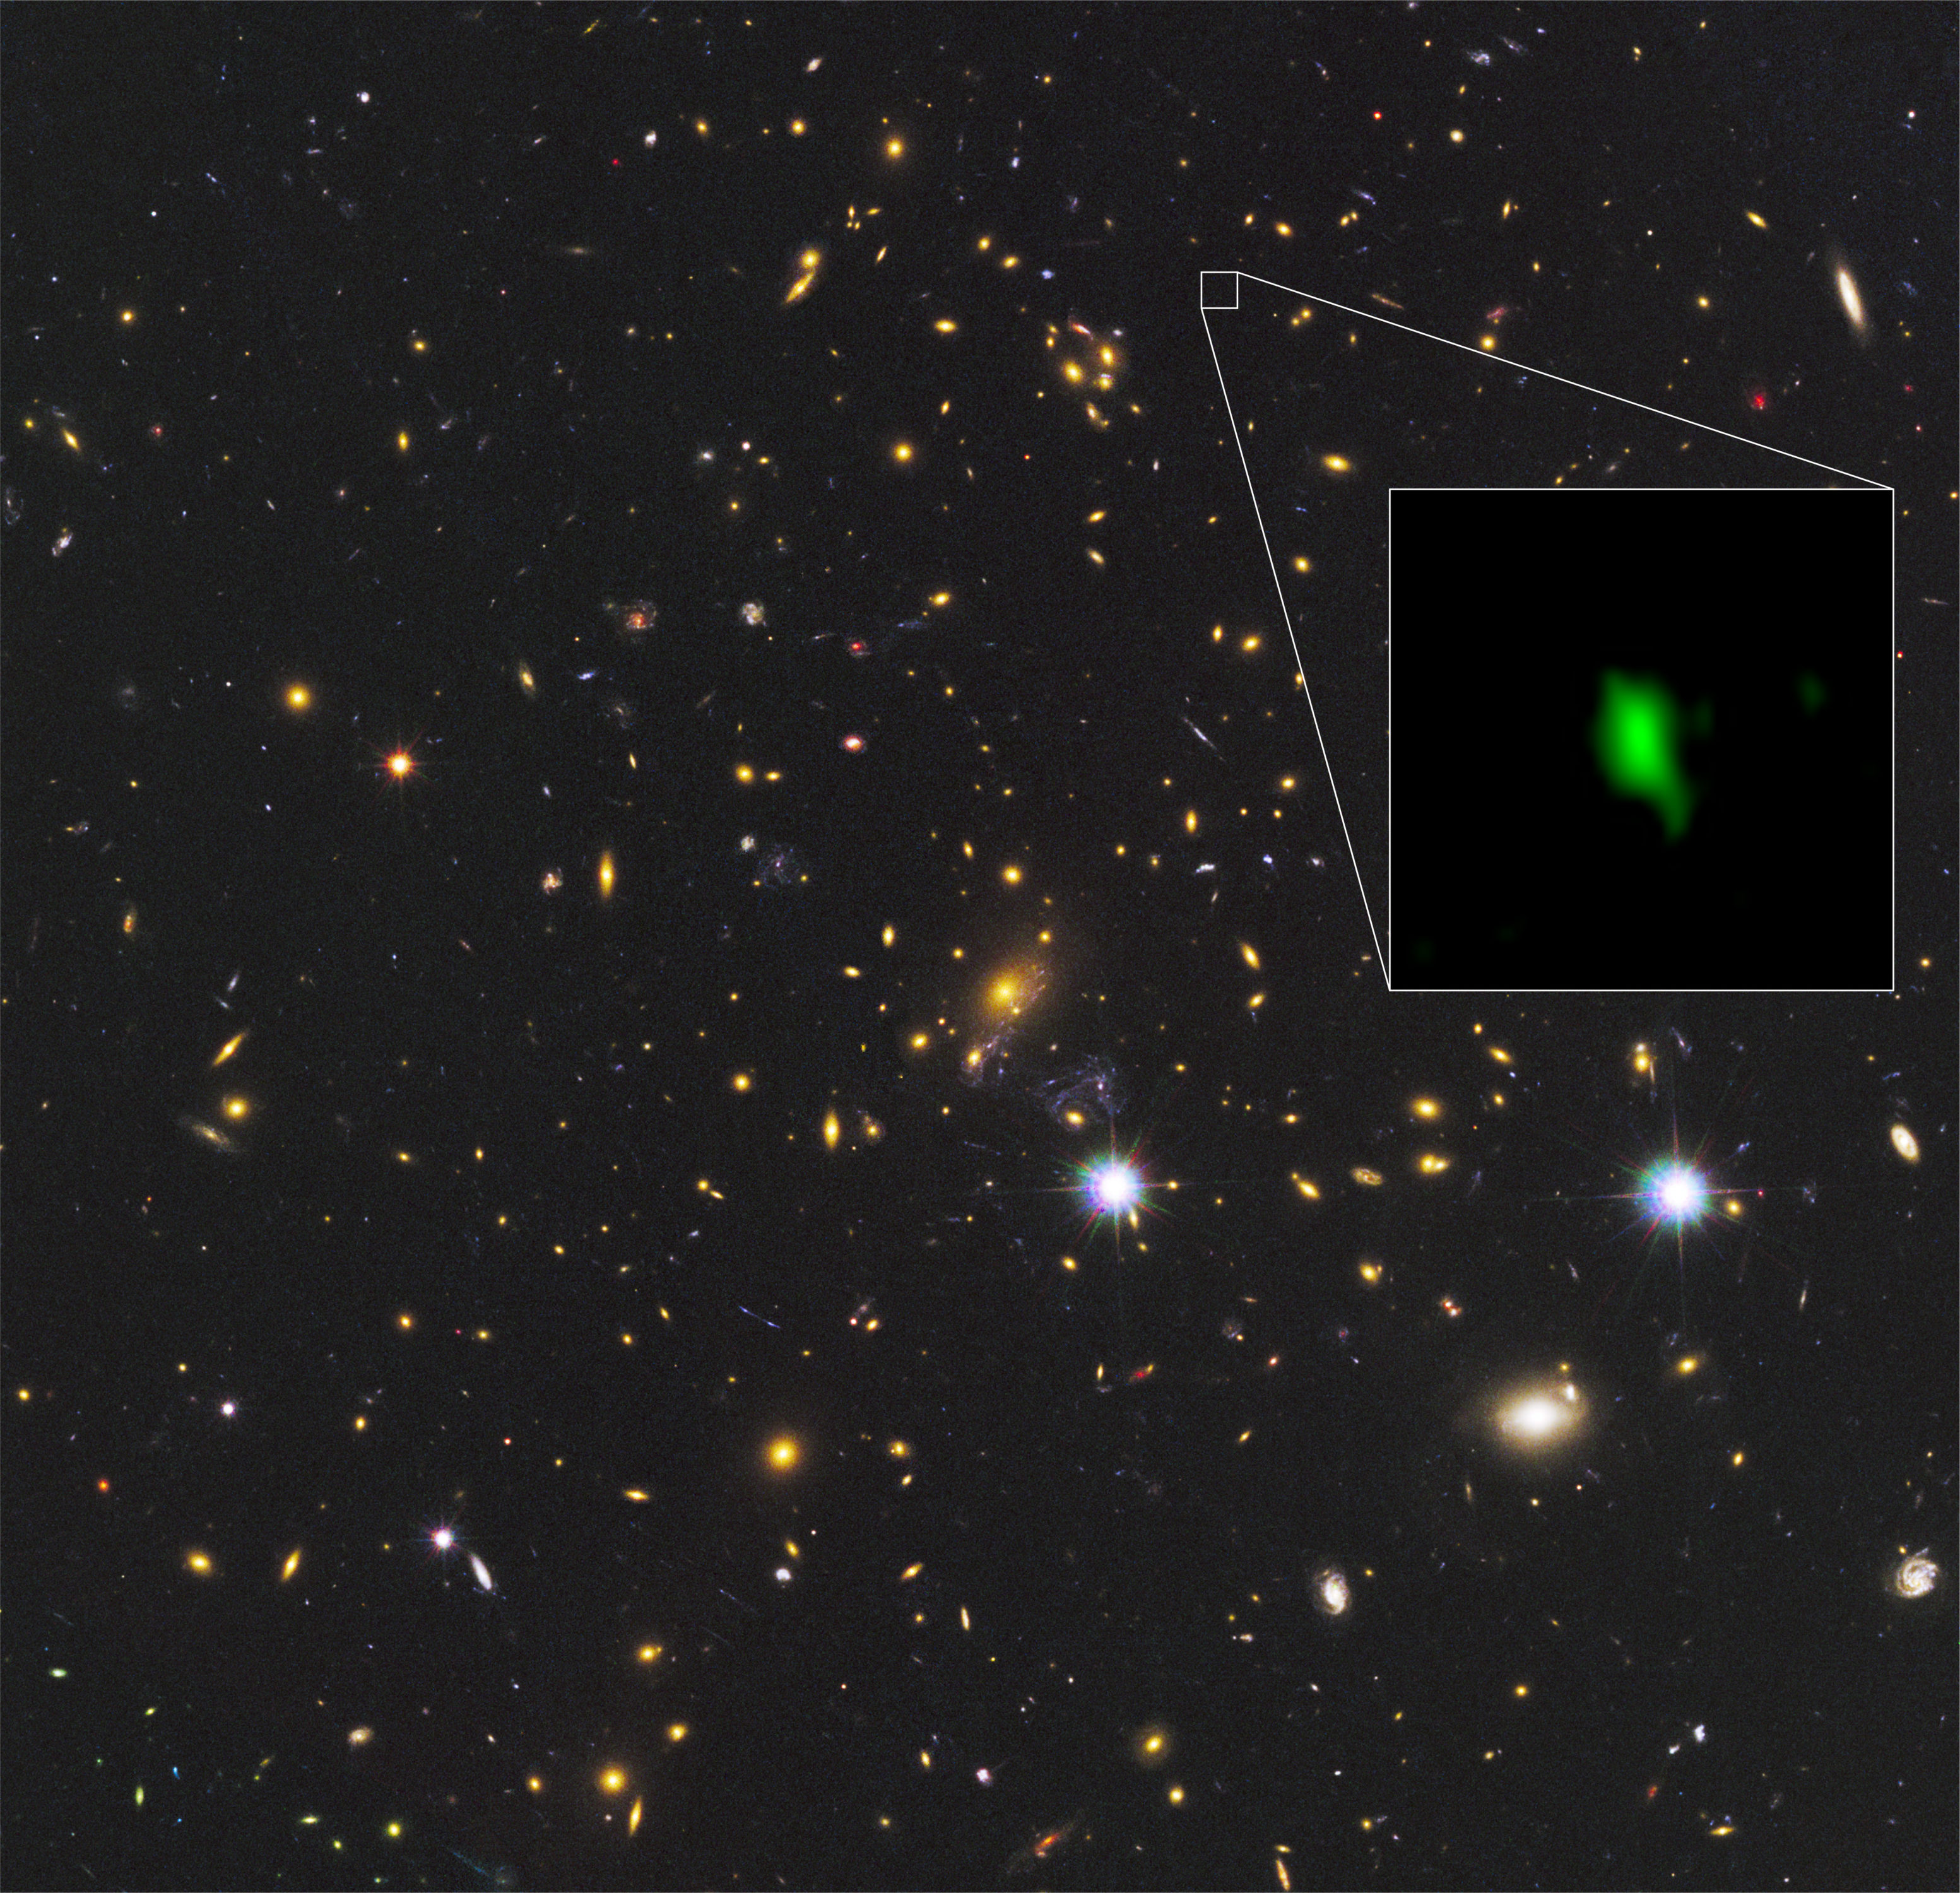 En esta imagen se aprecia el cúmulo de galaxias MACS J1149.5+2223 observado por el telescopio espacial Hubble de la NASA/ESA, y el recuadro muestra la galaxia MACS1149-JD1, observada por ALMA, a 13.280 millones de años luz de distancia. La distribución del oxígeno detectada por ALMA se muestra en verde. Créditos: ALMA (ESO/NAOJ/NRAO), telescopio espacial Hubble de la NASA/ESA, W. Zheng (JHU), M. Postman (STScI), CLASH Team, Hashimoto et al.